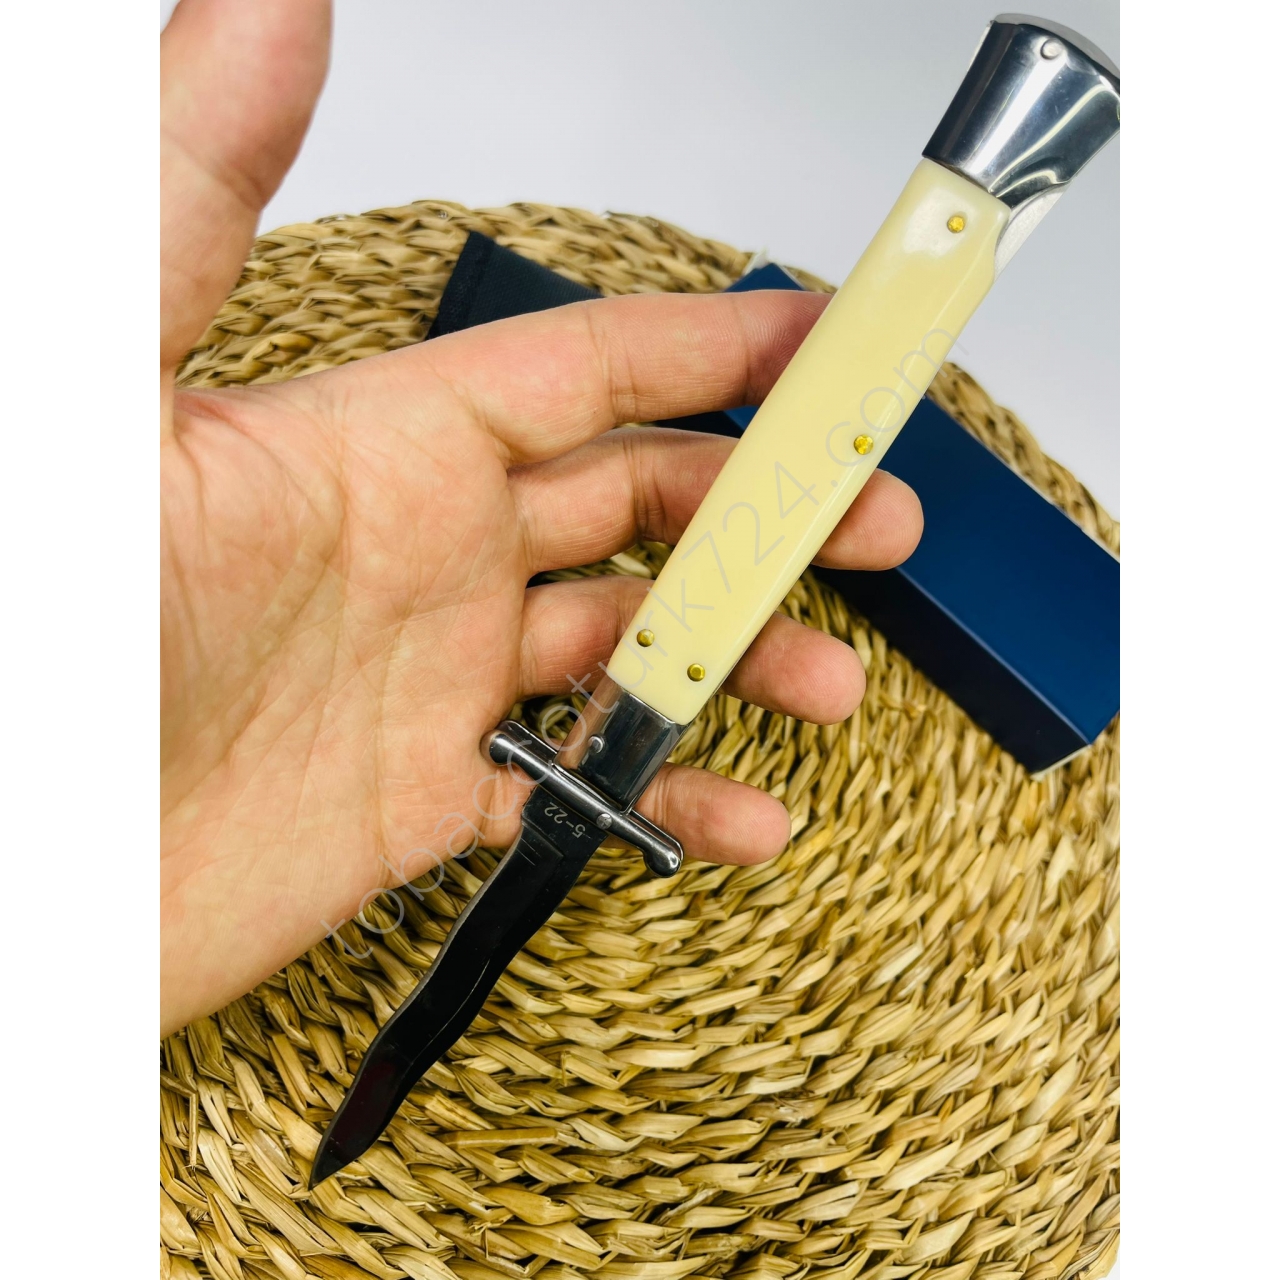 Akc Marka İtalyan Kemik Kasa Kıvrımlı Bıçak //25cm-Yeniseri